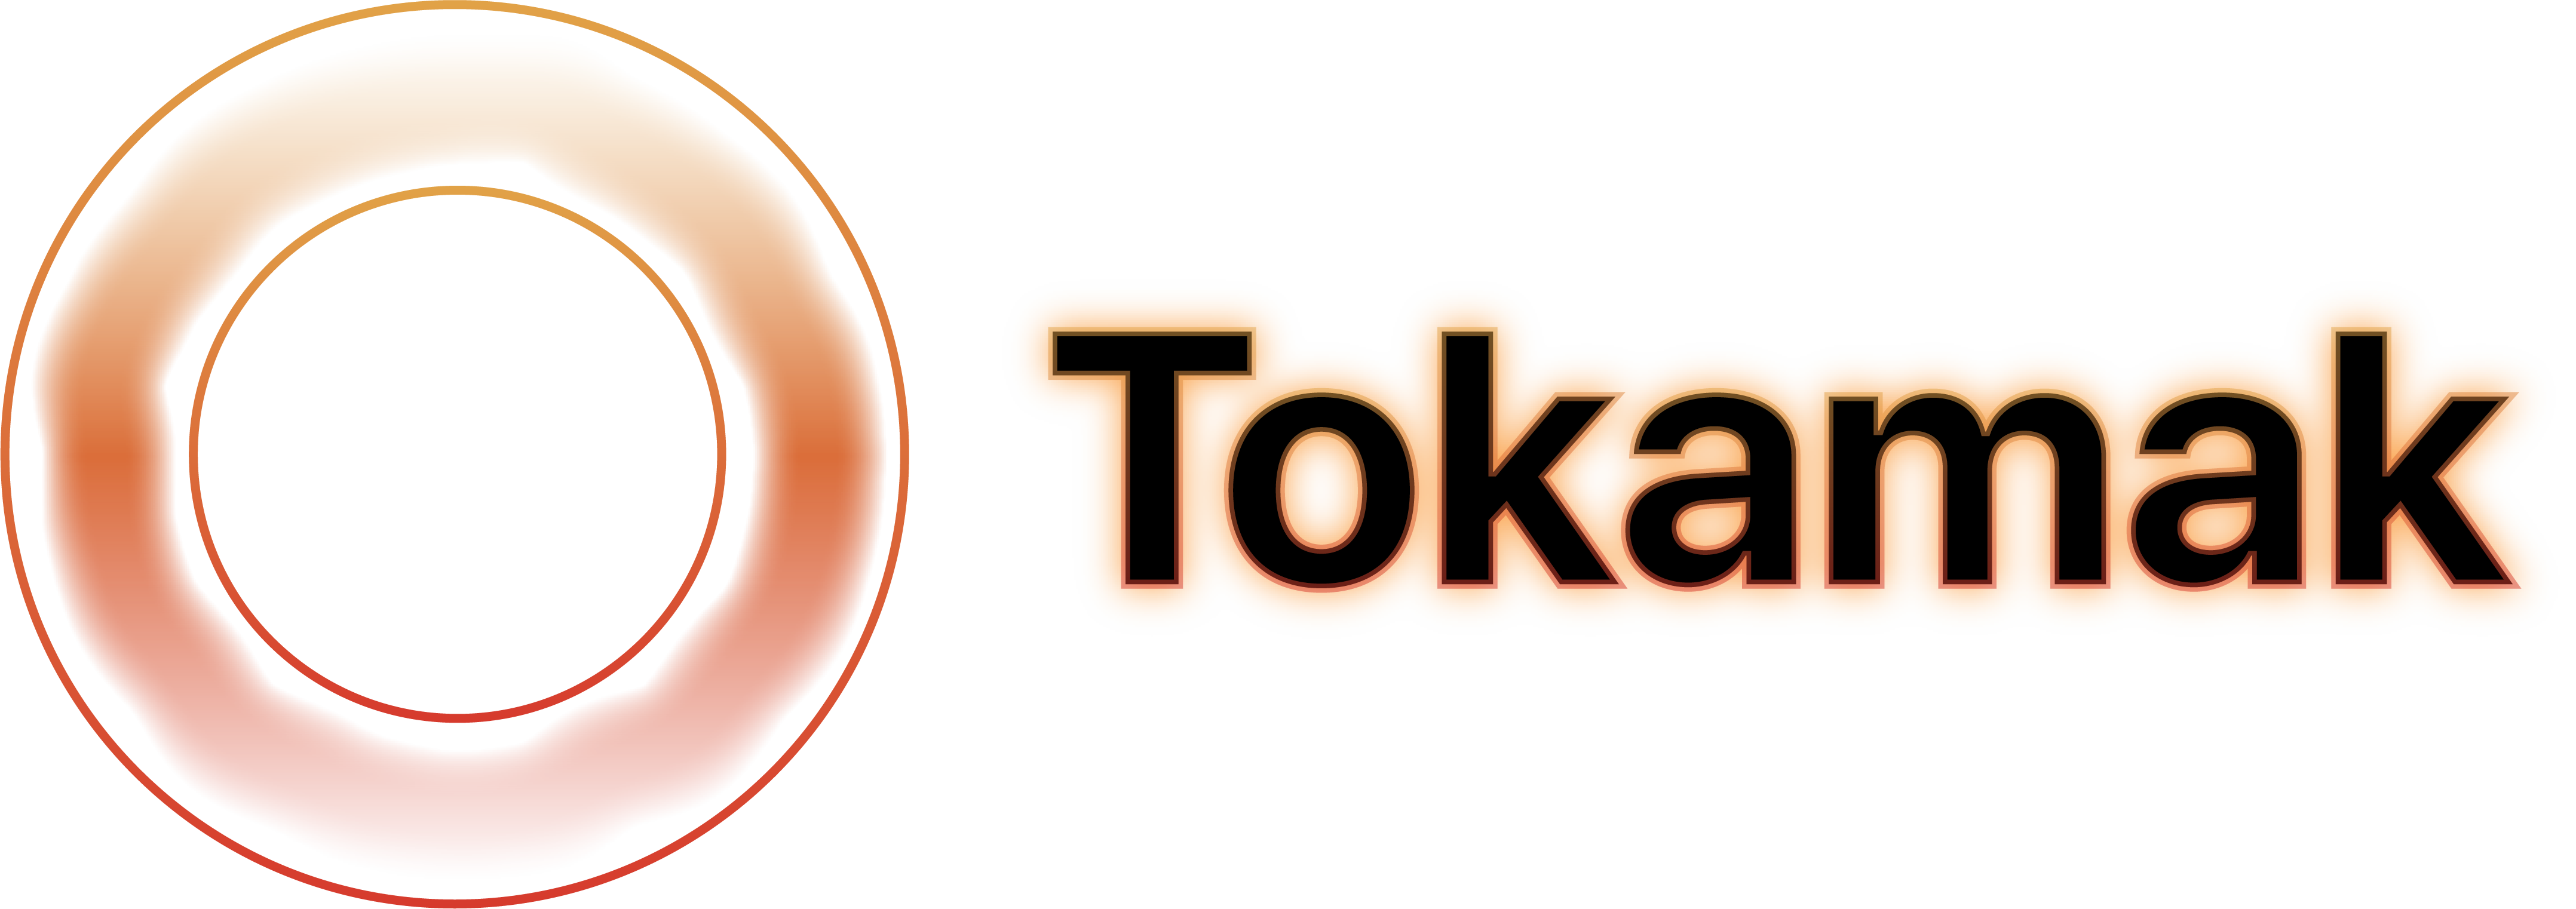 Tokamak logo